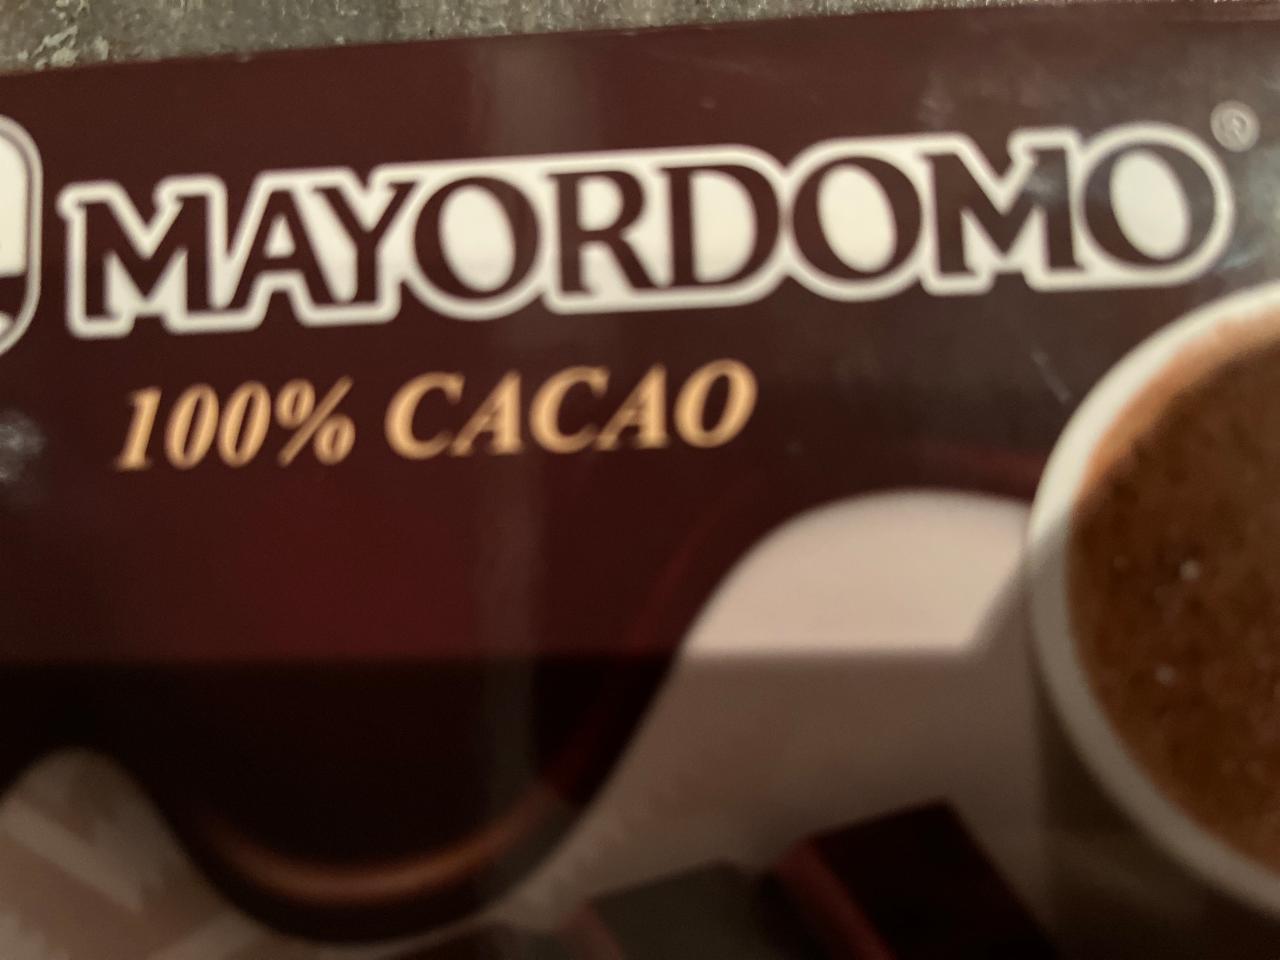 Fotografie - 100% Cacao Mayordomo